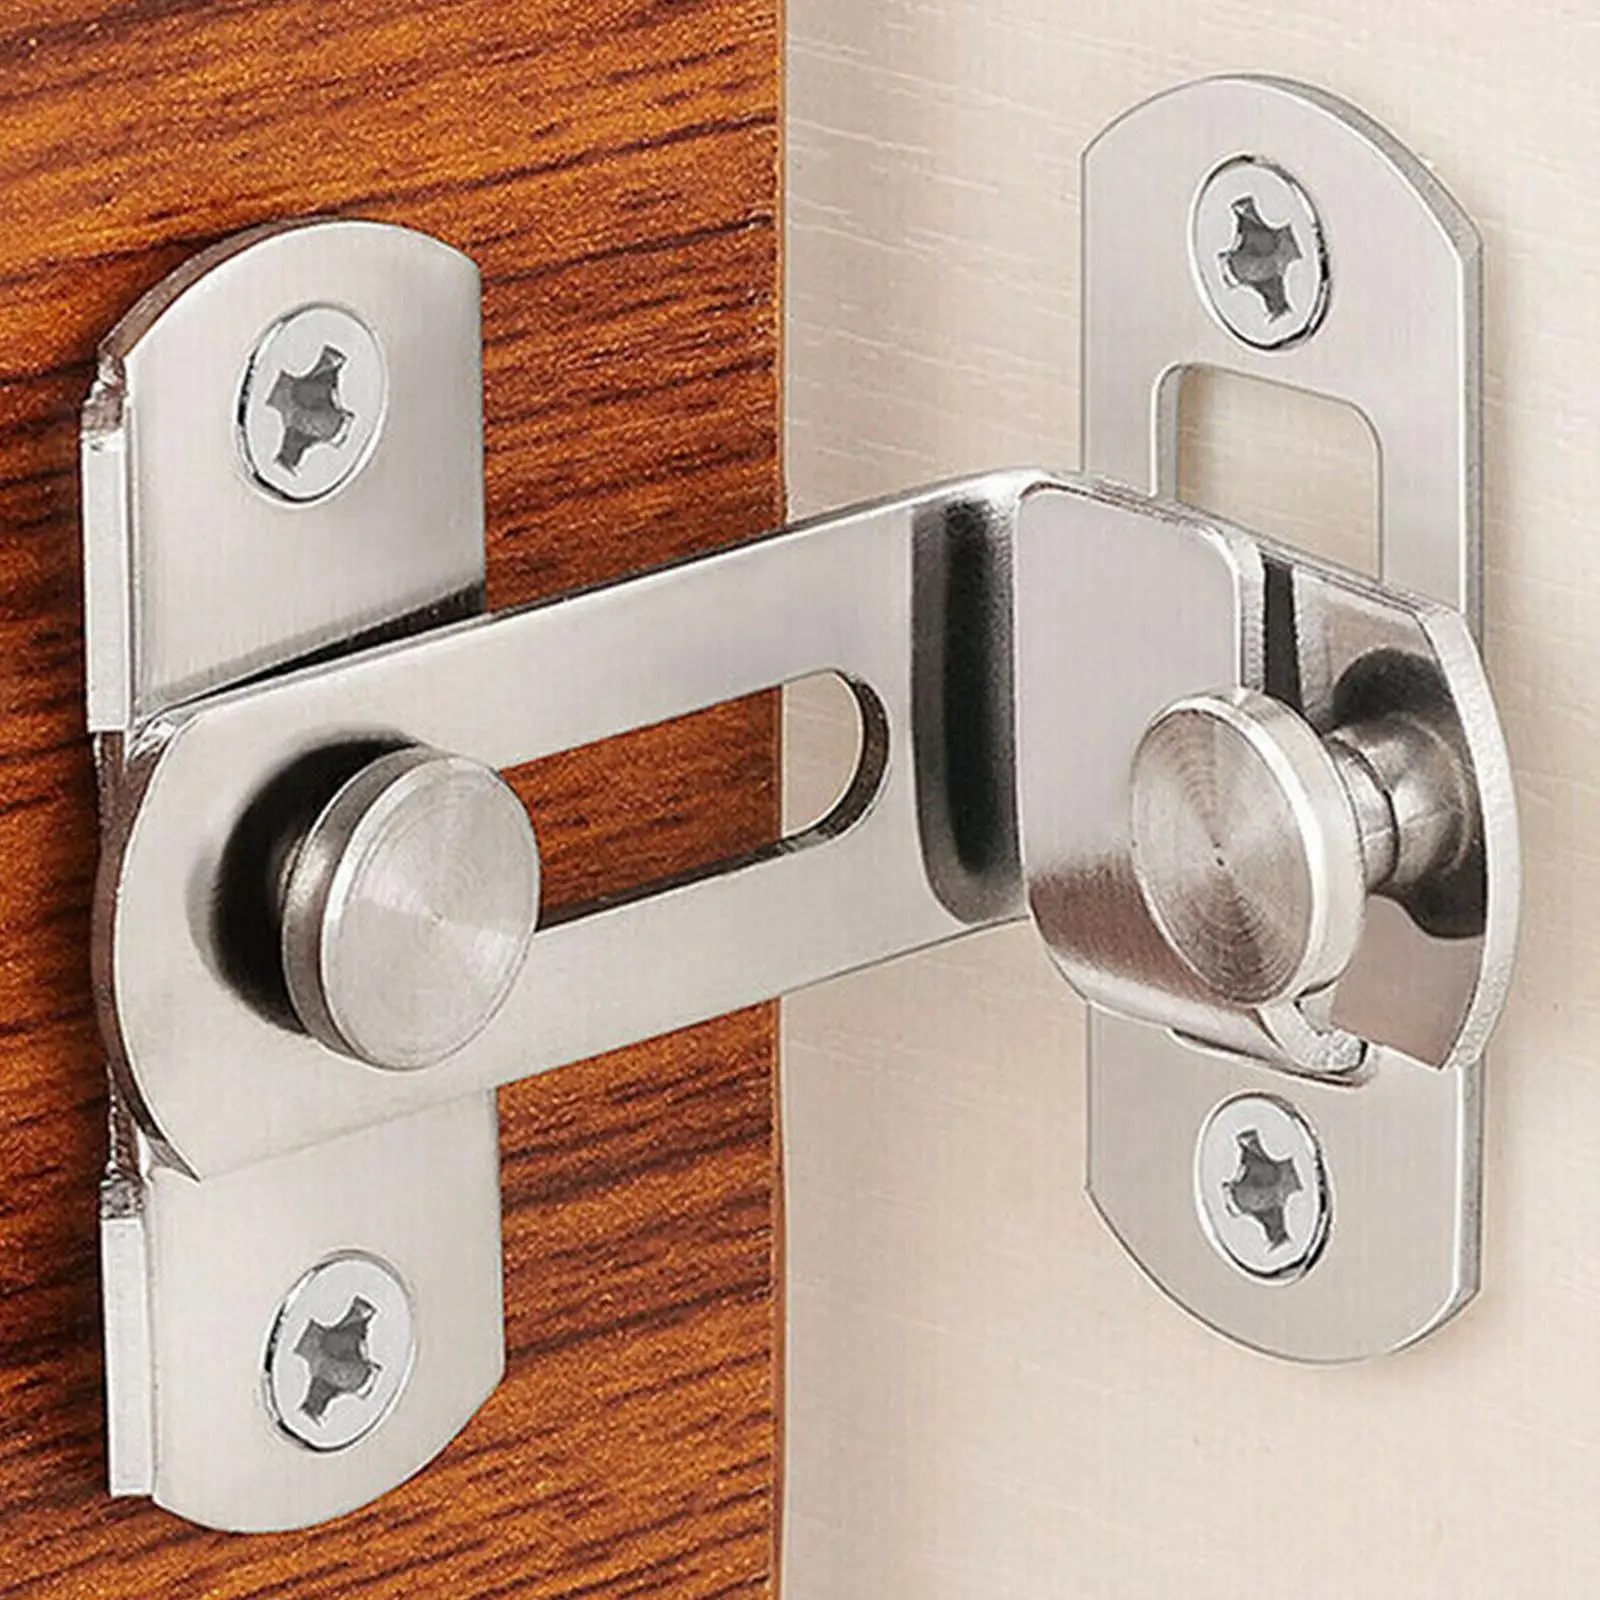 

90 Degree Steel Door Right Angle Sliding Bending Screws Screw With Lock Door Locker Accessories Hardw P4b2